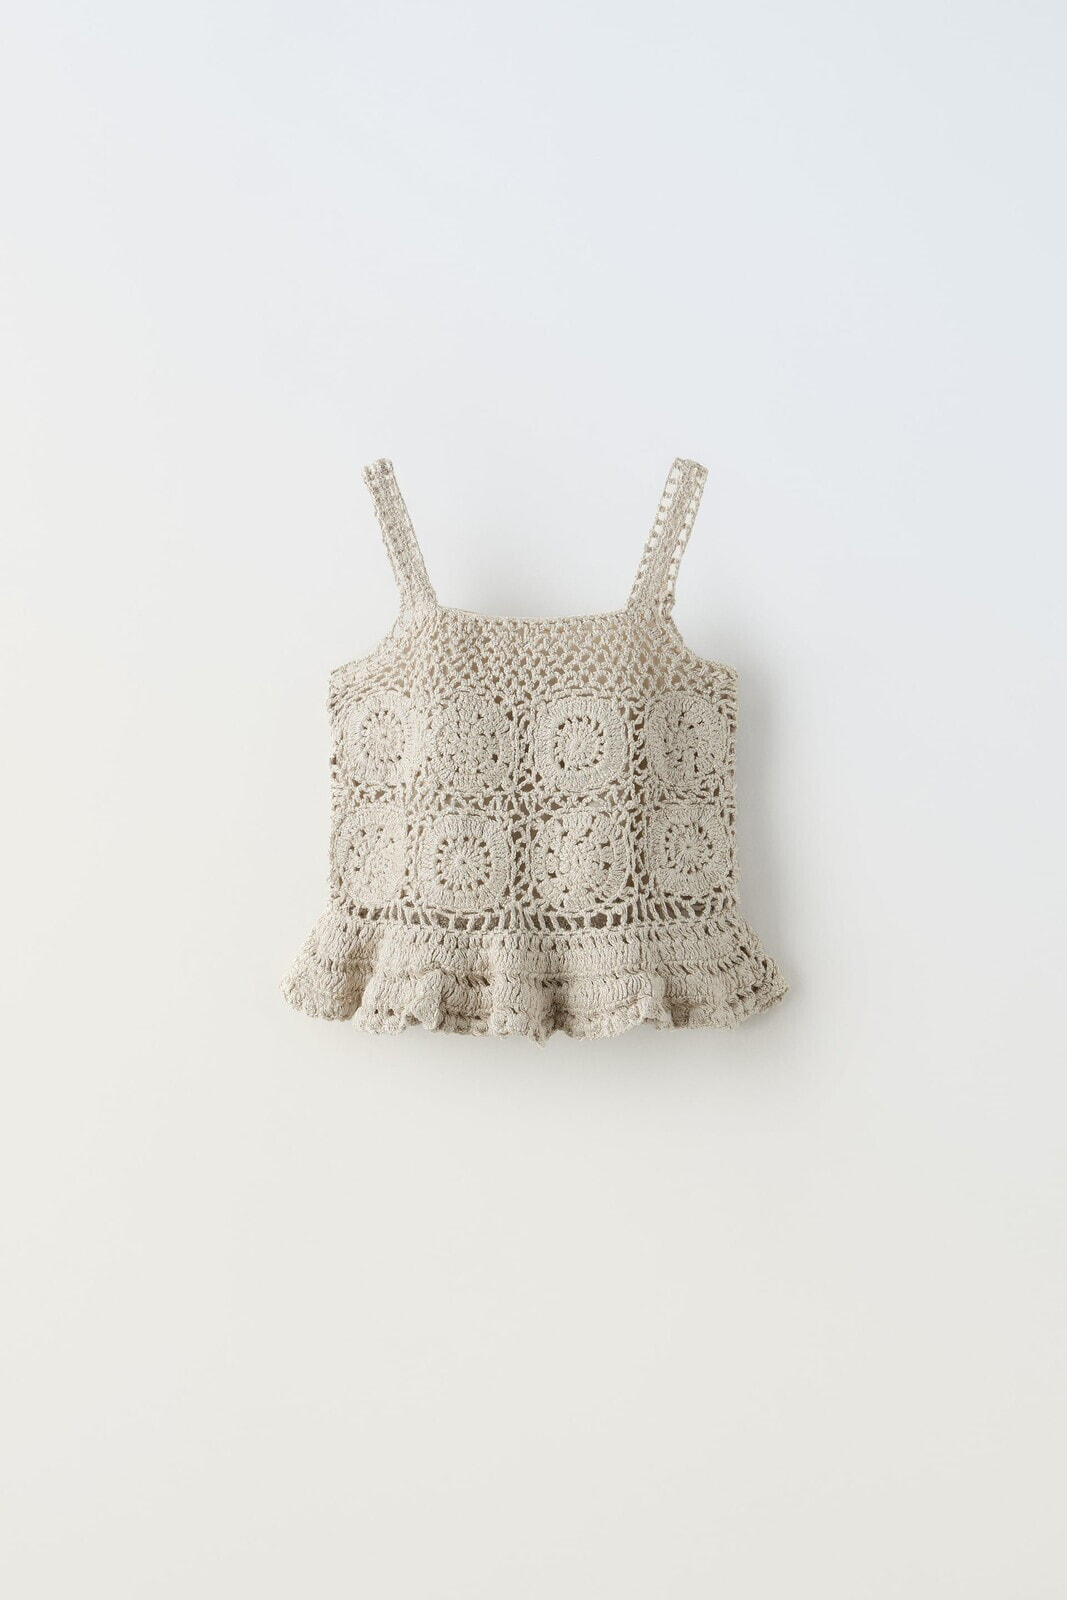 Shimmery crochet knit top